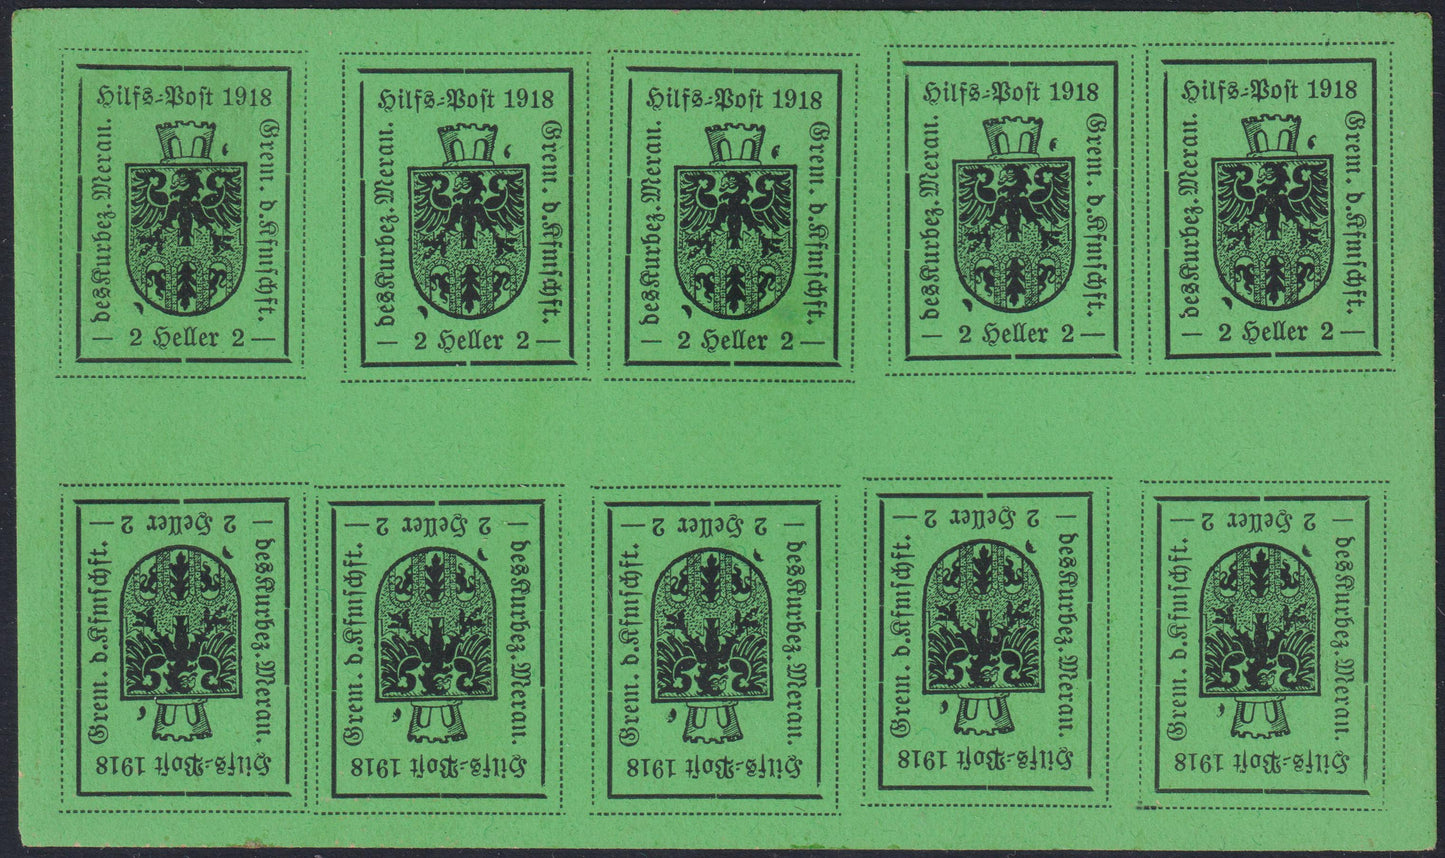 MER17 - Merano, 2 impresiones tipográficas heller verde claro del primer tipo, minihoja de 10 ejemplares, nueva con goma intacta (4A).